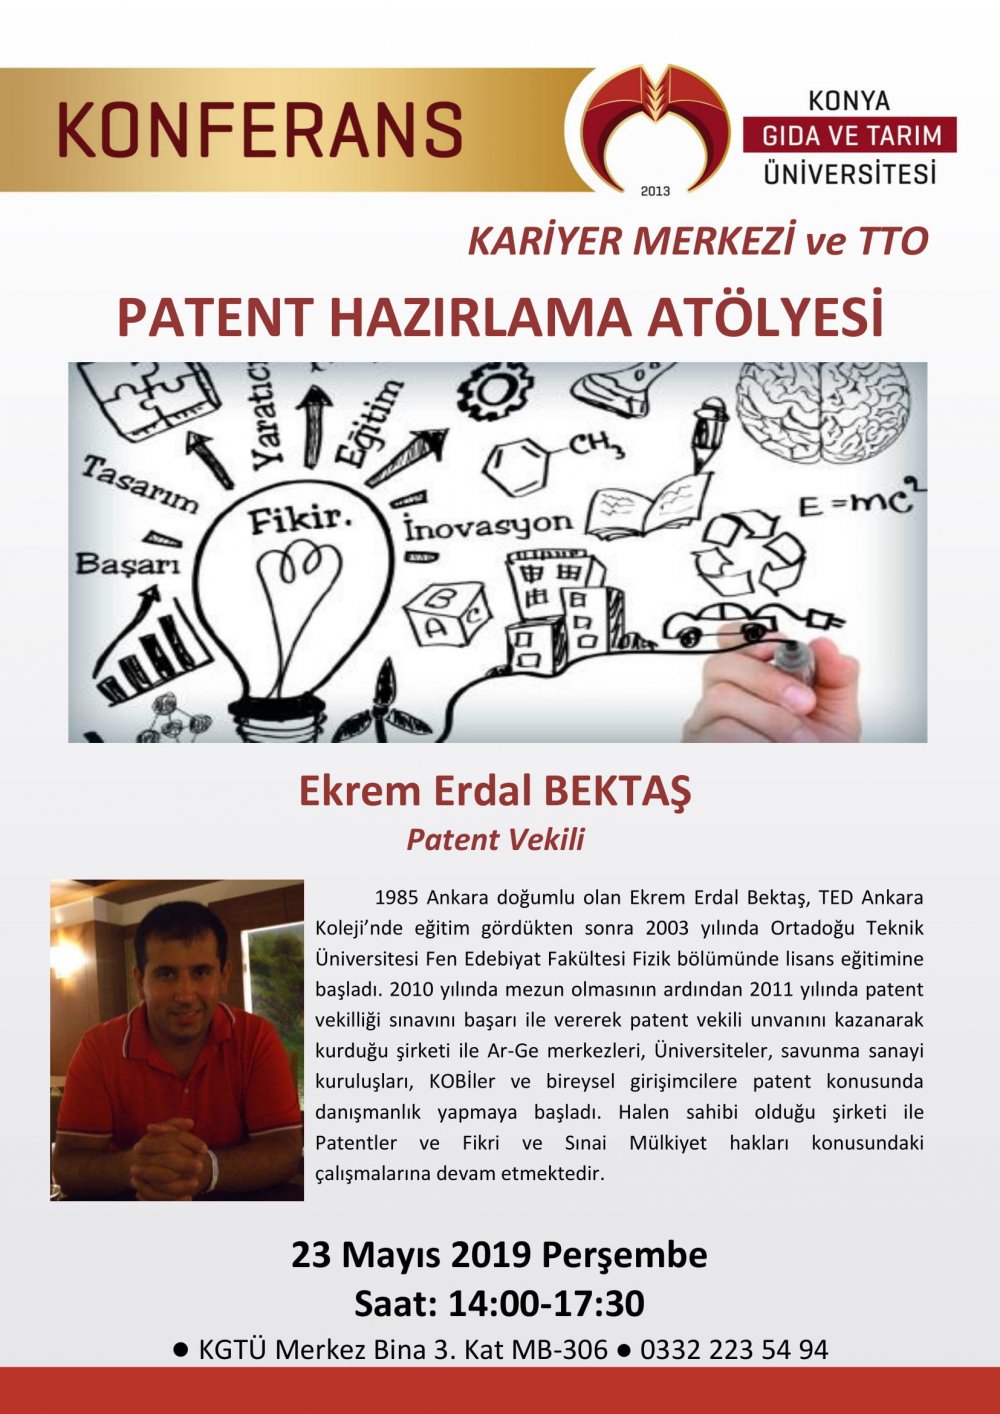 Patent Hazırlama Atölyesi / 23 Mayıs 2019 Perşembe 14:00-17:00